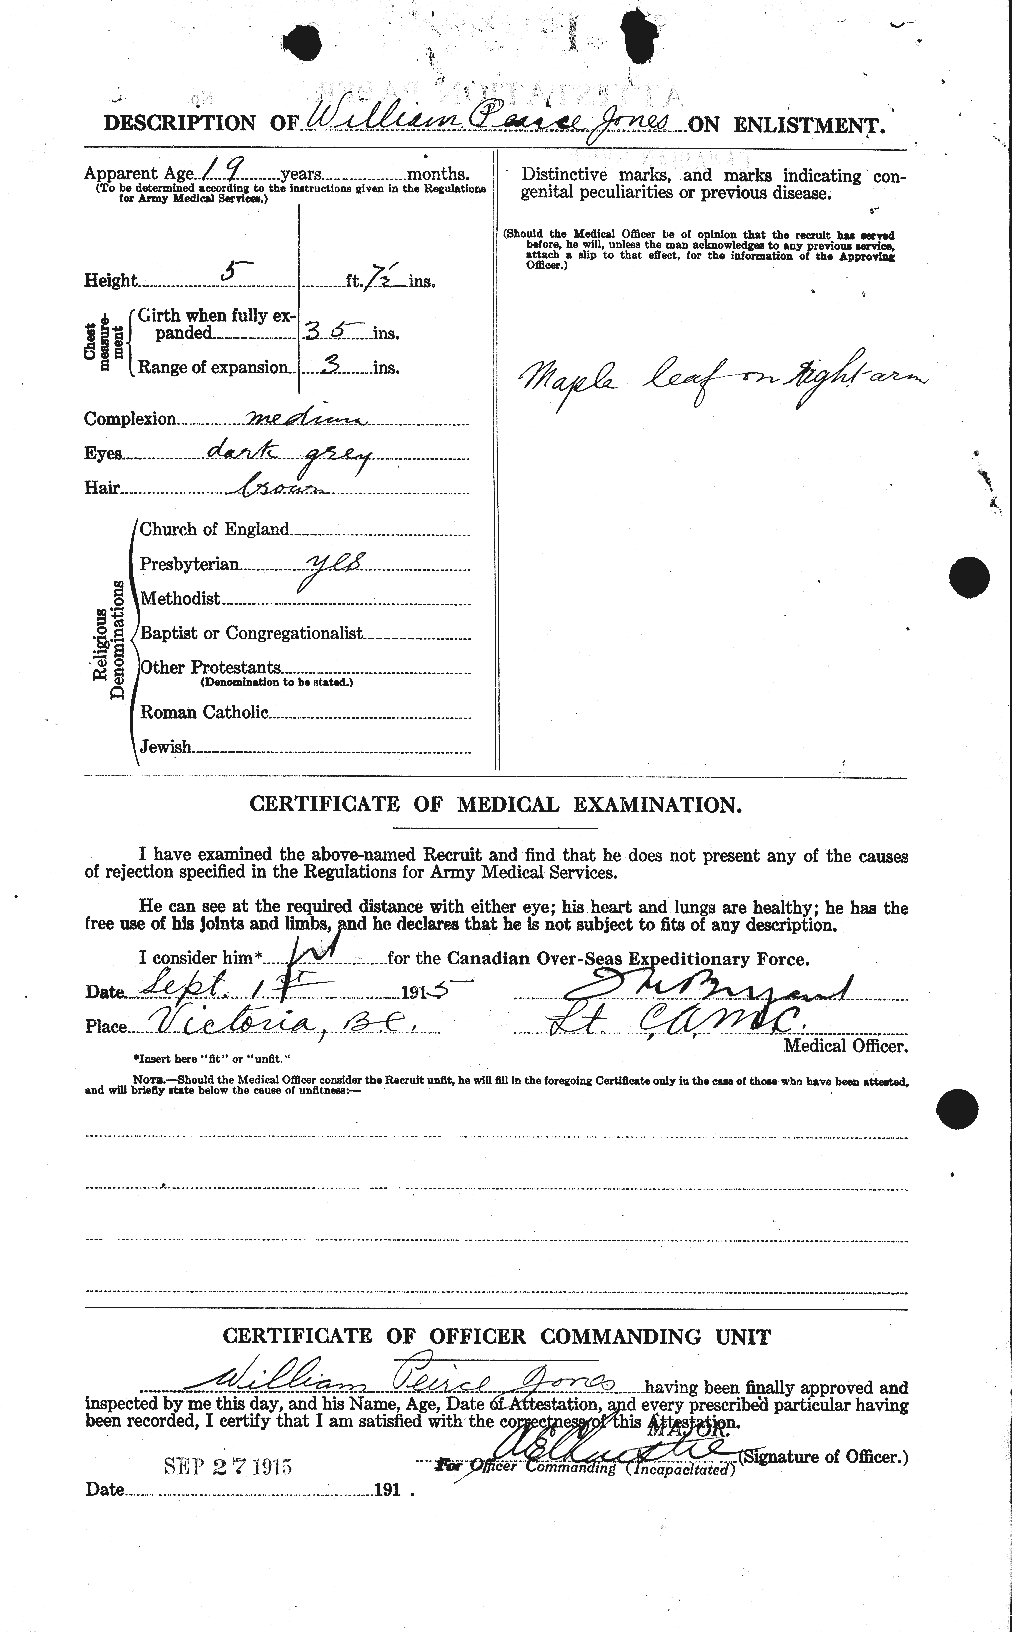 Dossiers du Personnel de la Première Guerre mondiale - CEC 428605b